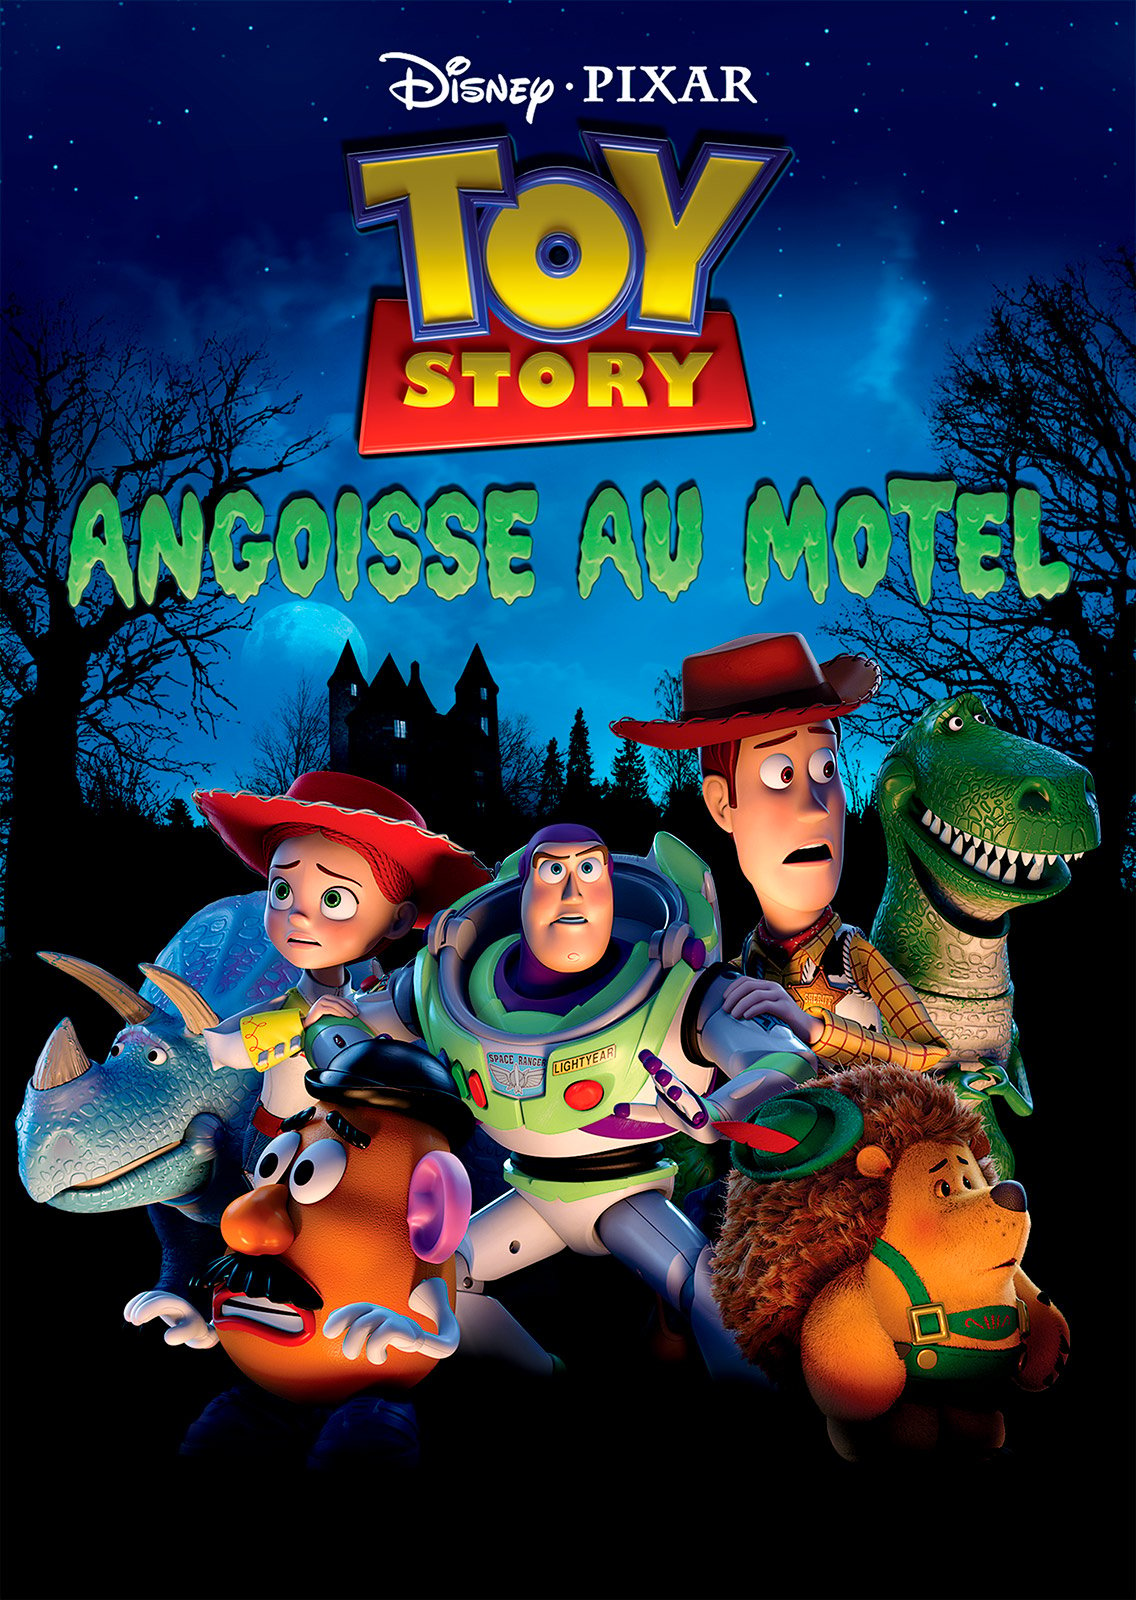 Toy Story : angoisse au motel